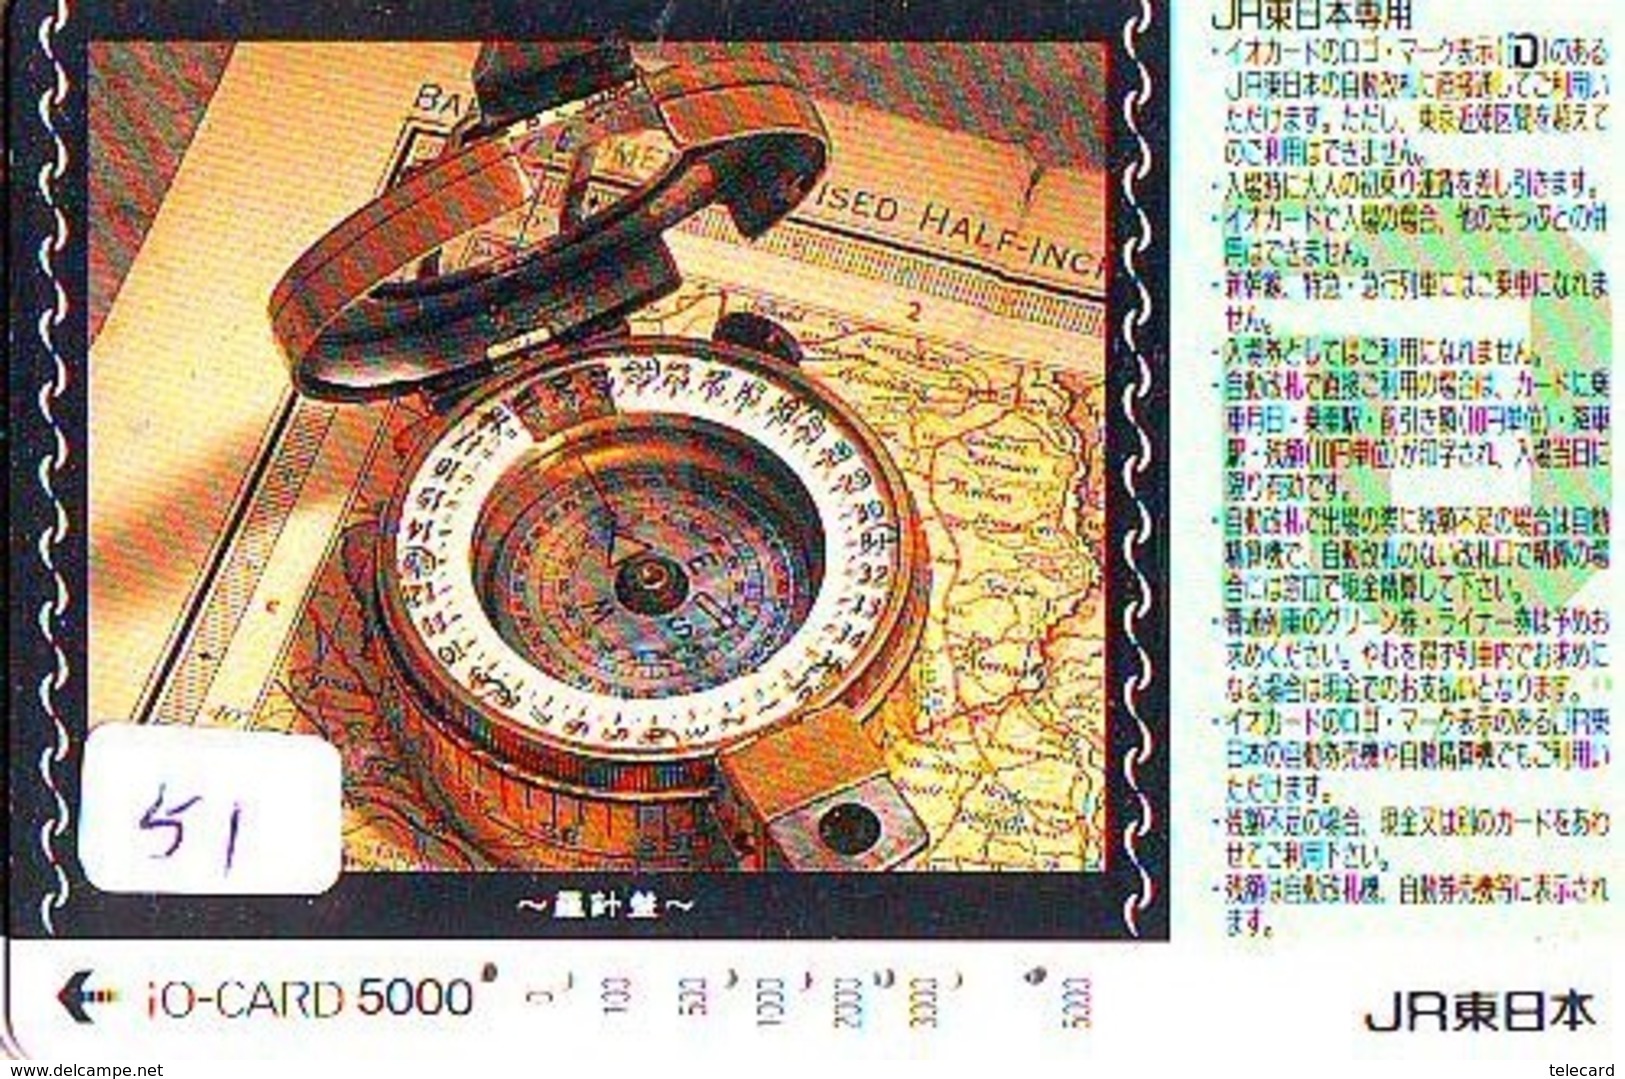 Compass Boussole Kompaß Kompas Sur Carte JAPAN (51) East West South North - Astronomùia